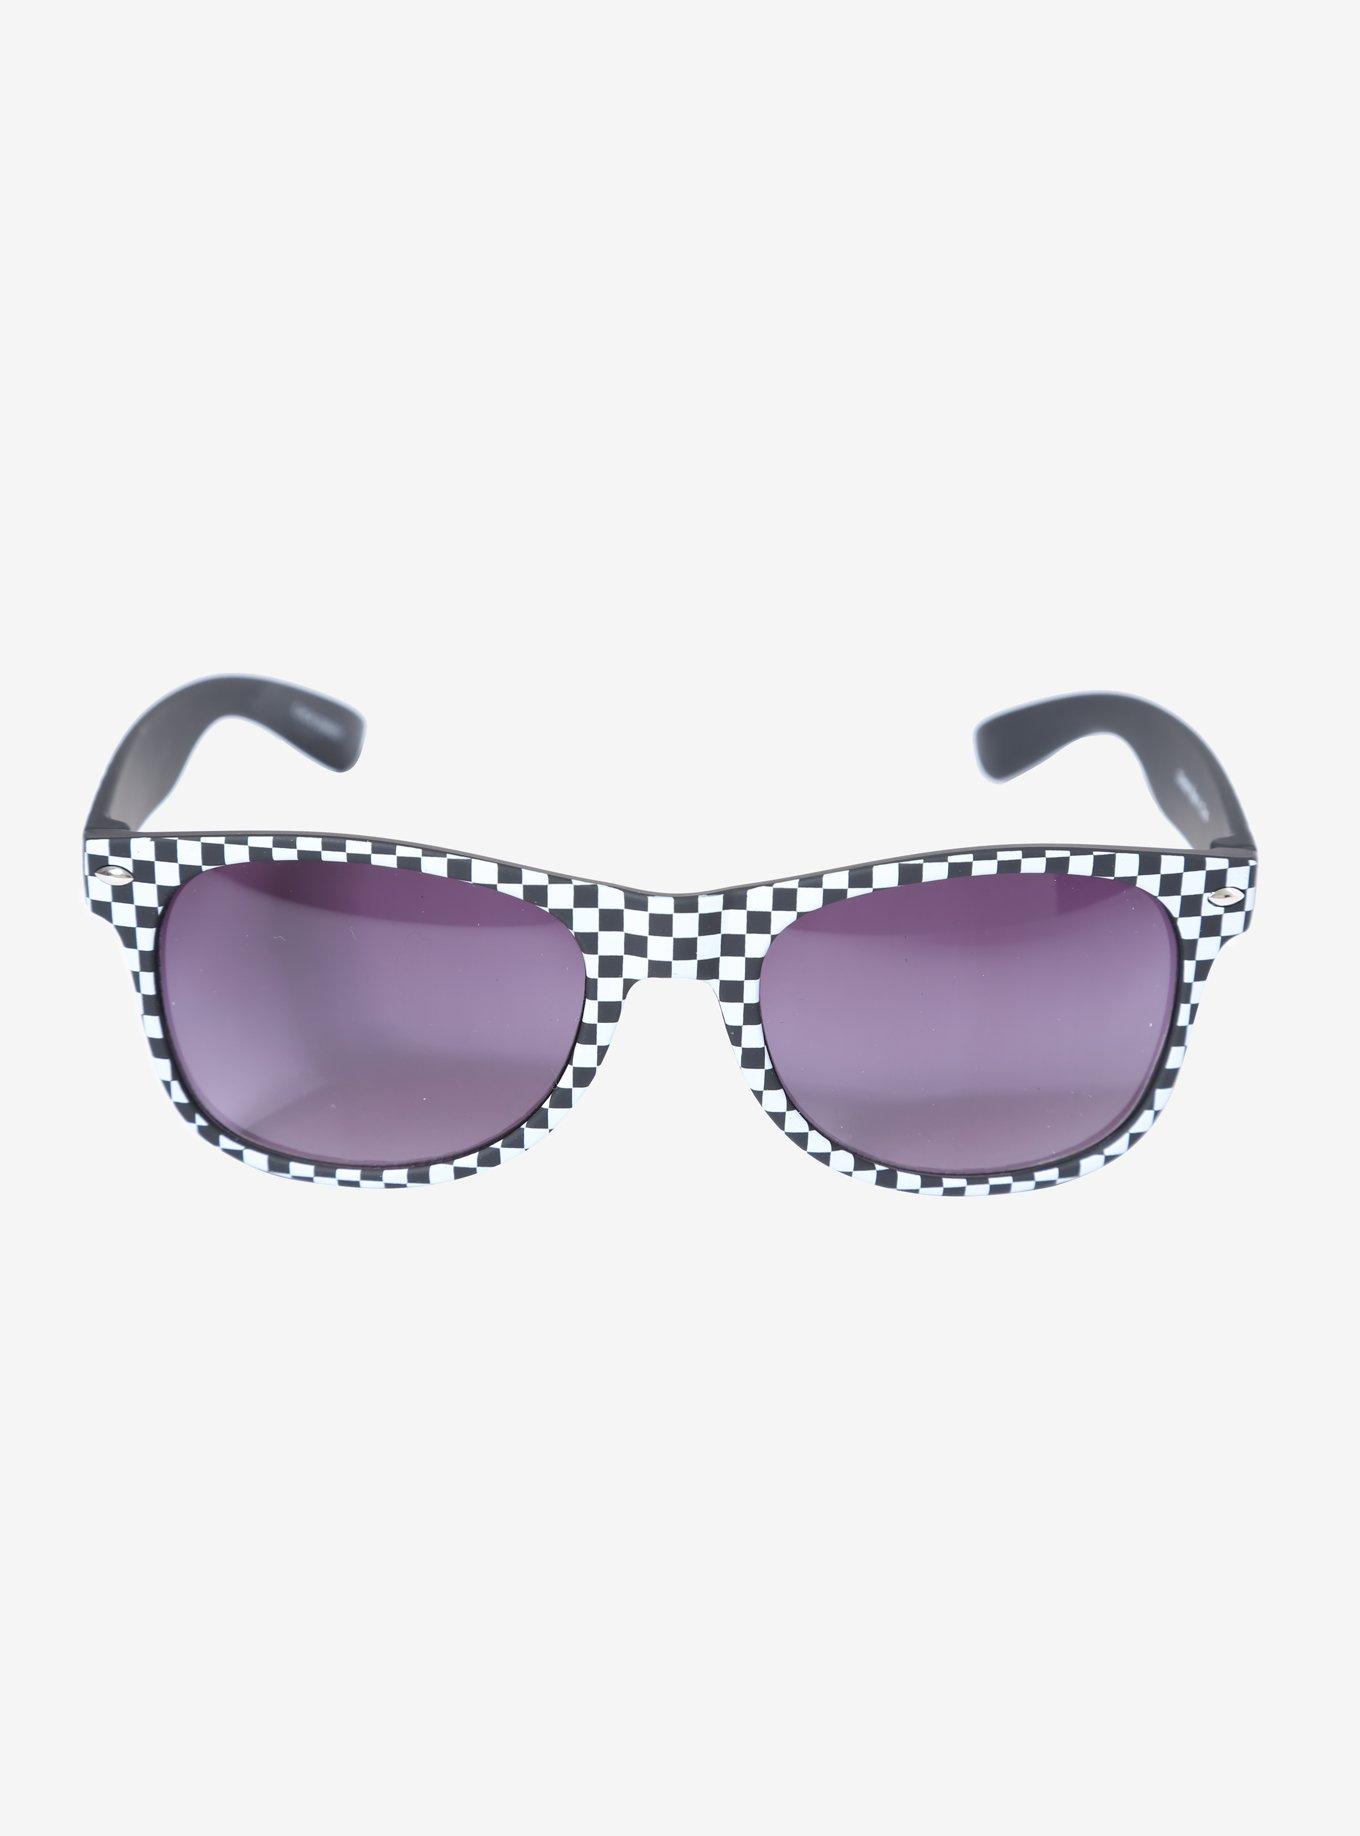 Black & White Checkered Retro Sunglasses, , alternate